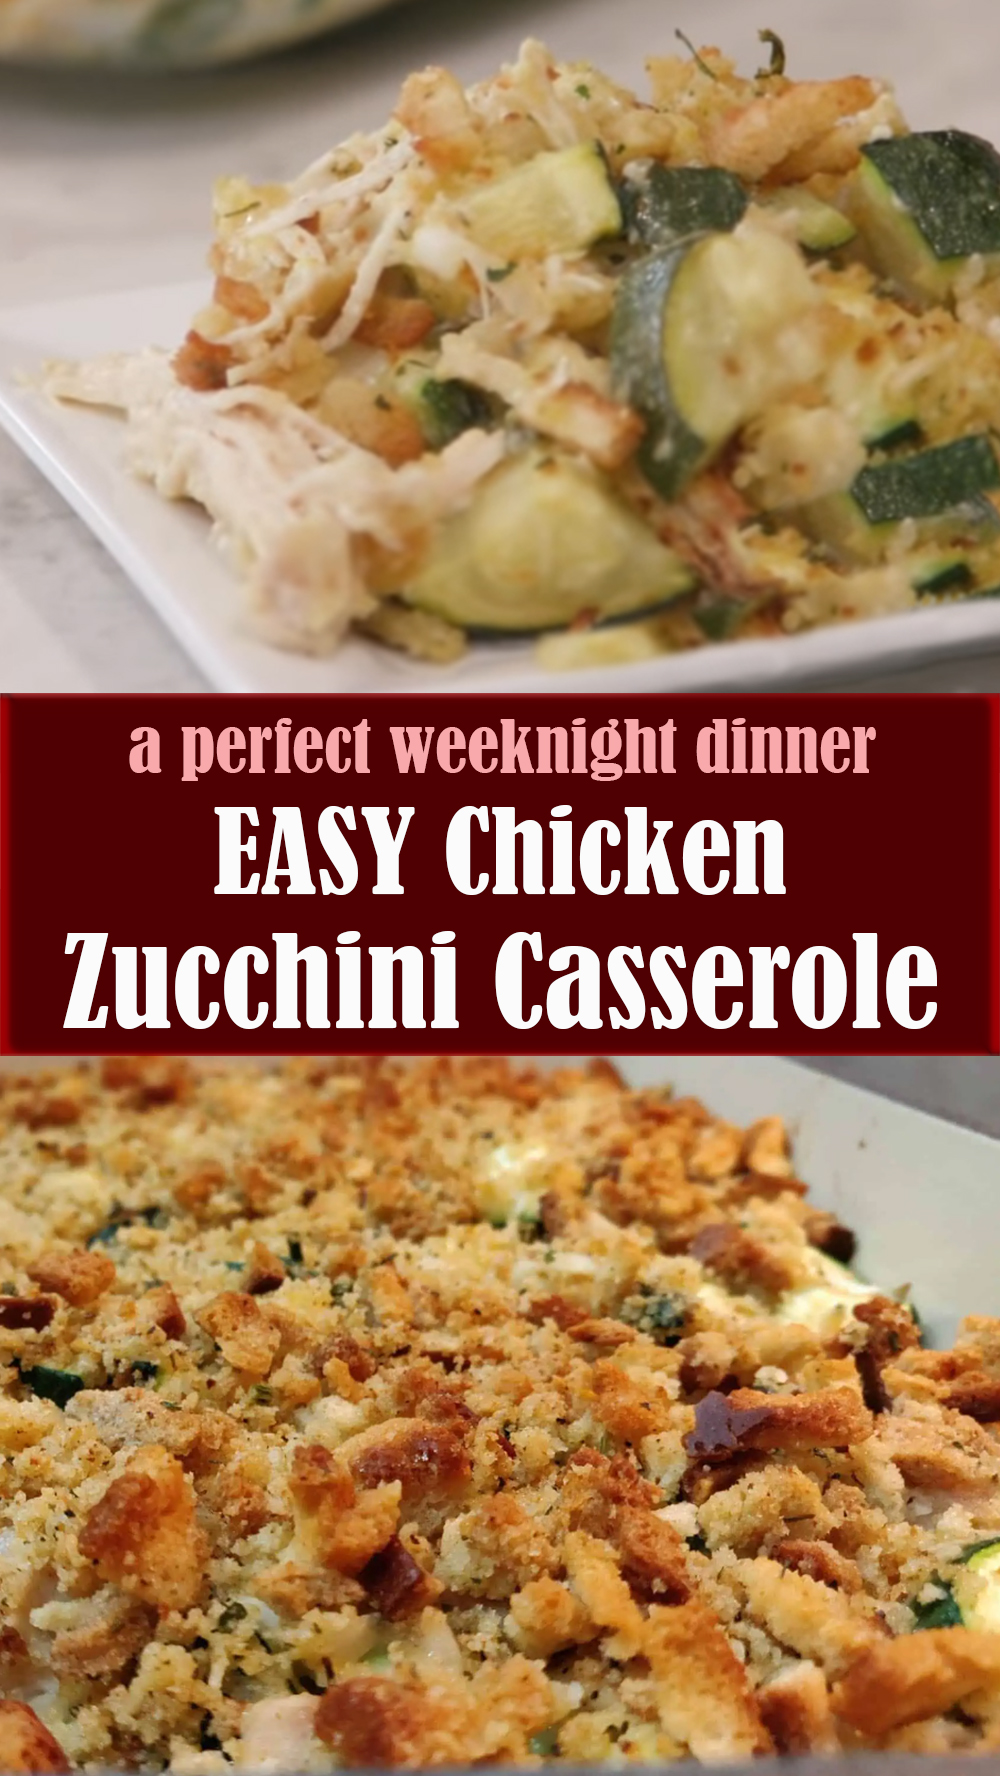 EASY Chicken Zucchini Casserole Recipe